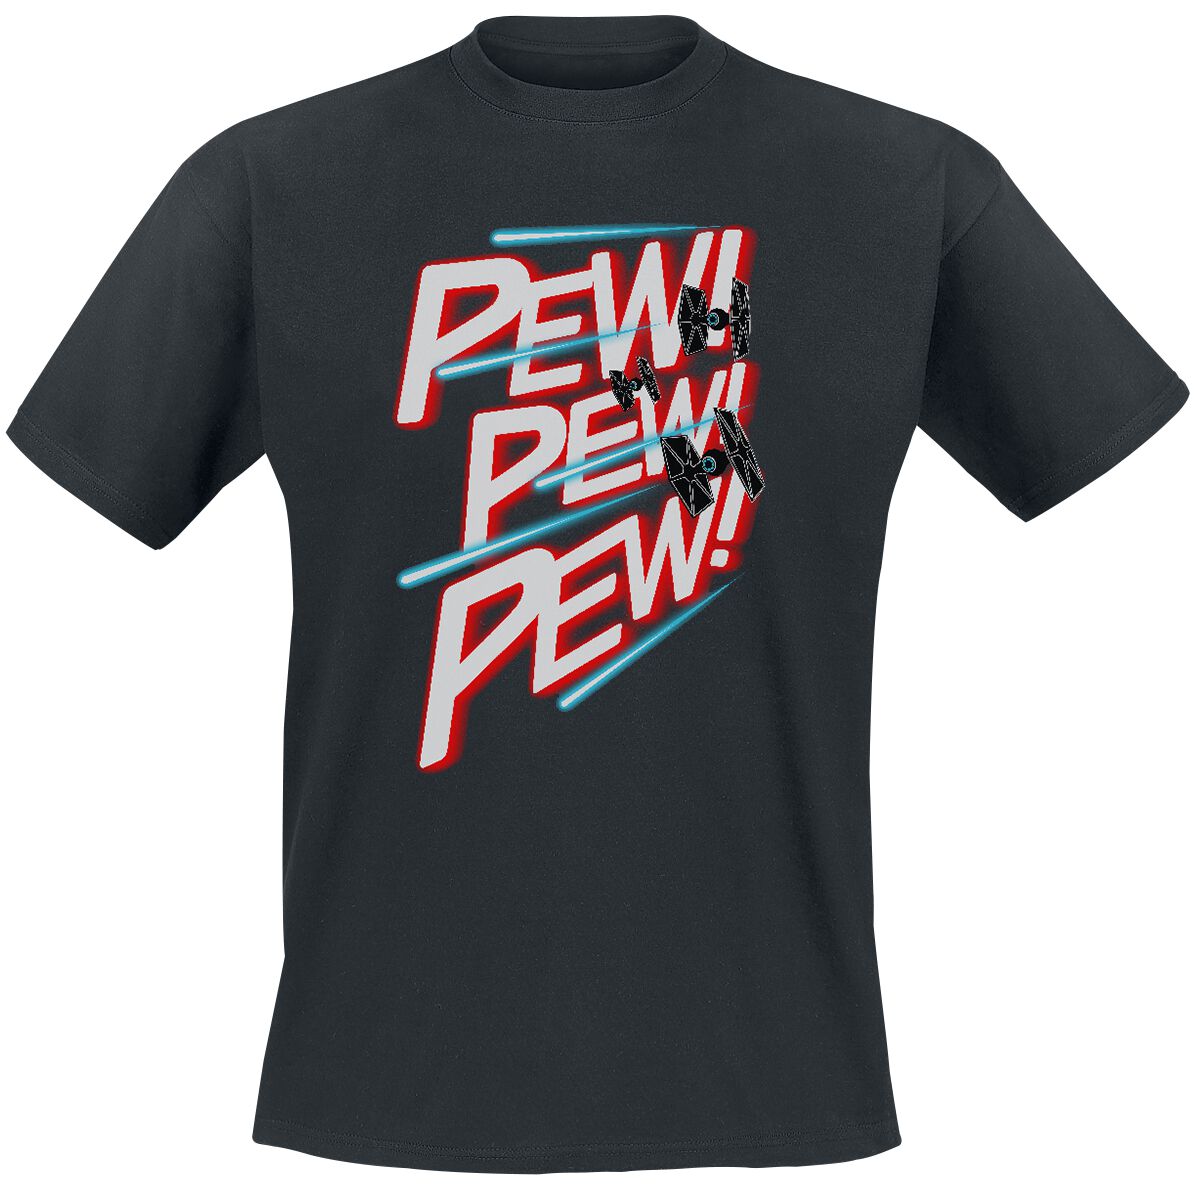 Star Wars T-Shirt - PEW PEW PEW - S bis 3XL - für Männer - Größe 3XL - schwarz  - Lizenzierter Fanartikel